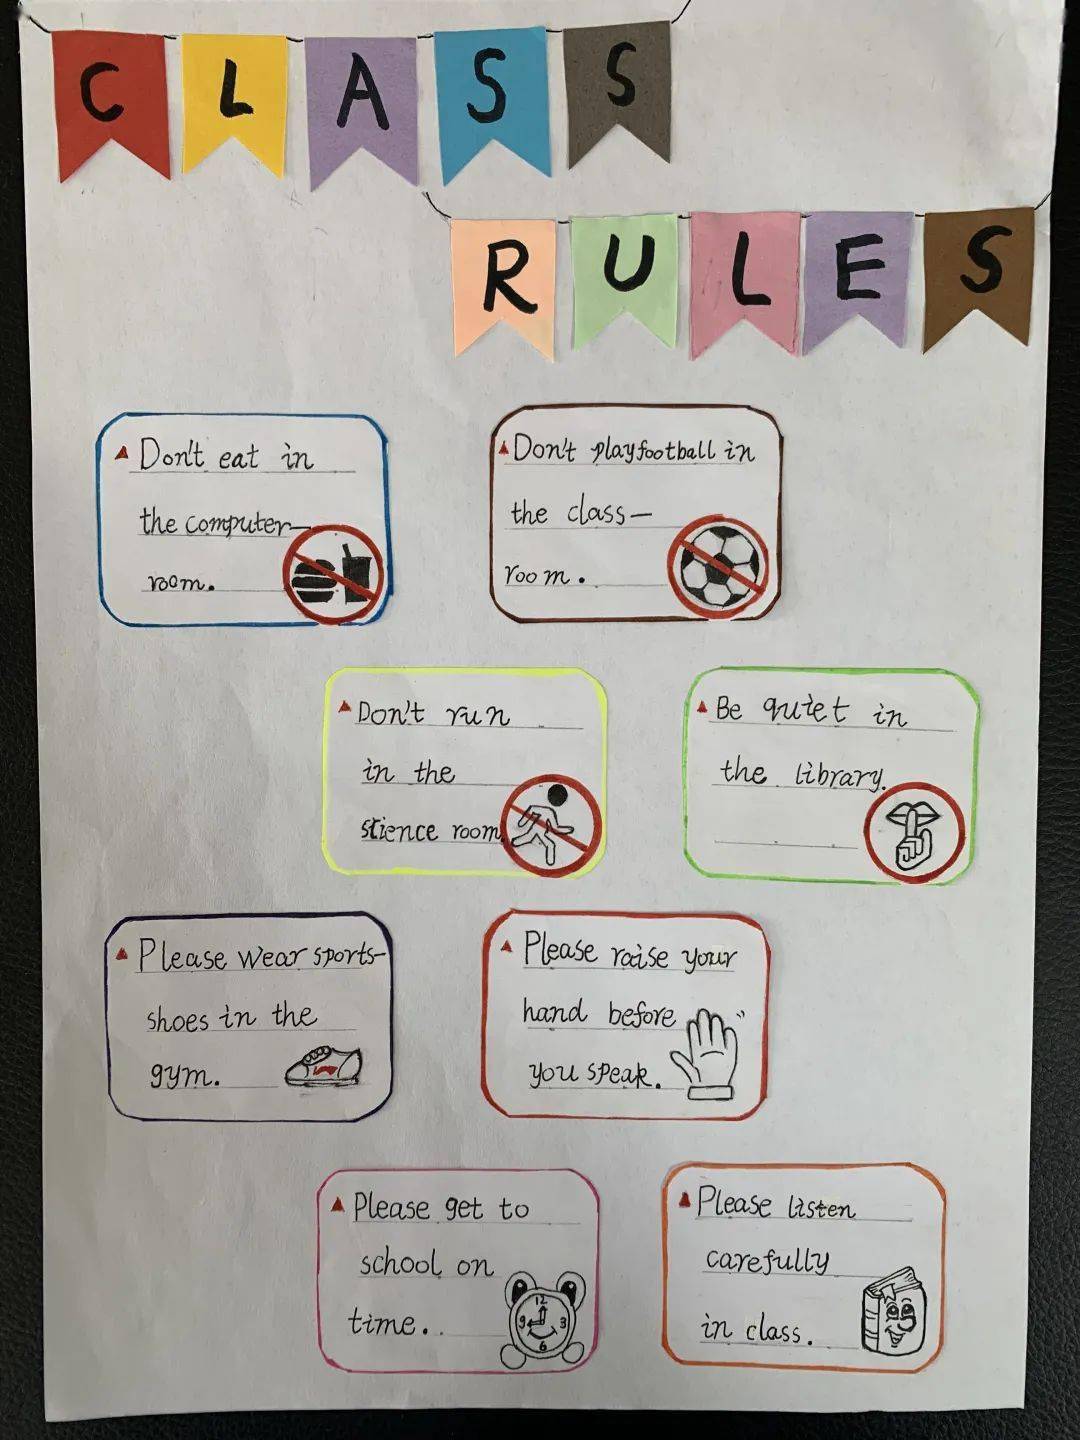 一起看看他们制定的班级规则是不是非常科学合理呀~二年级孩子们围绕